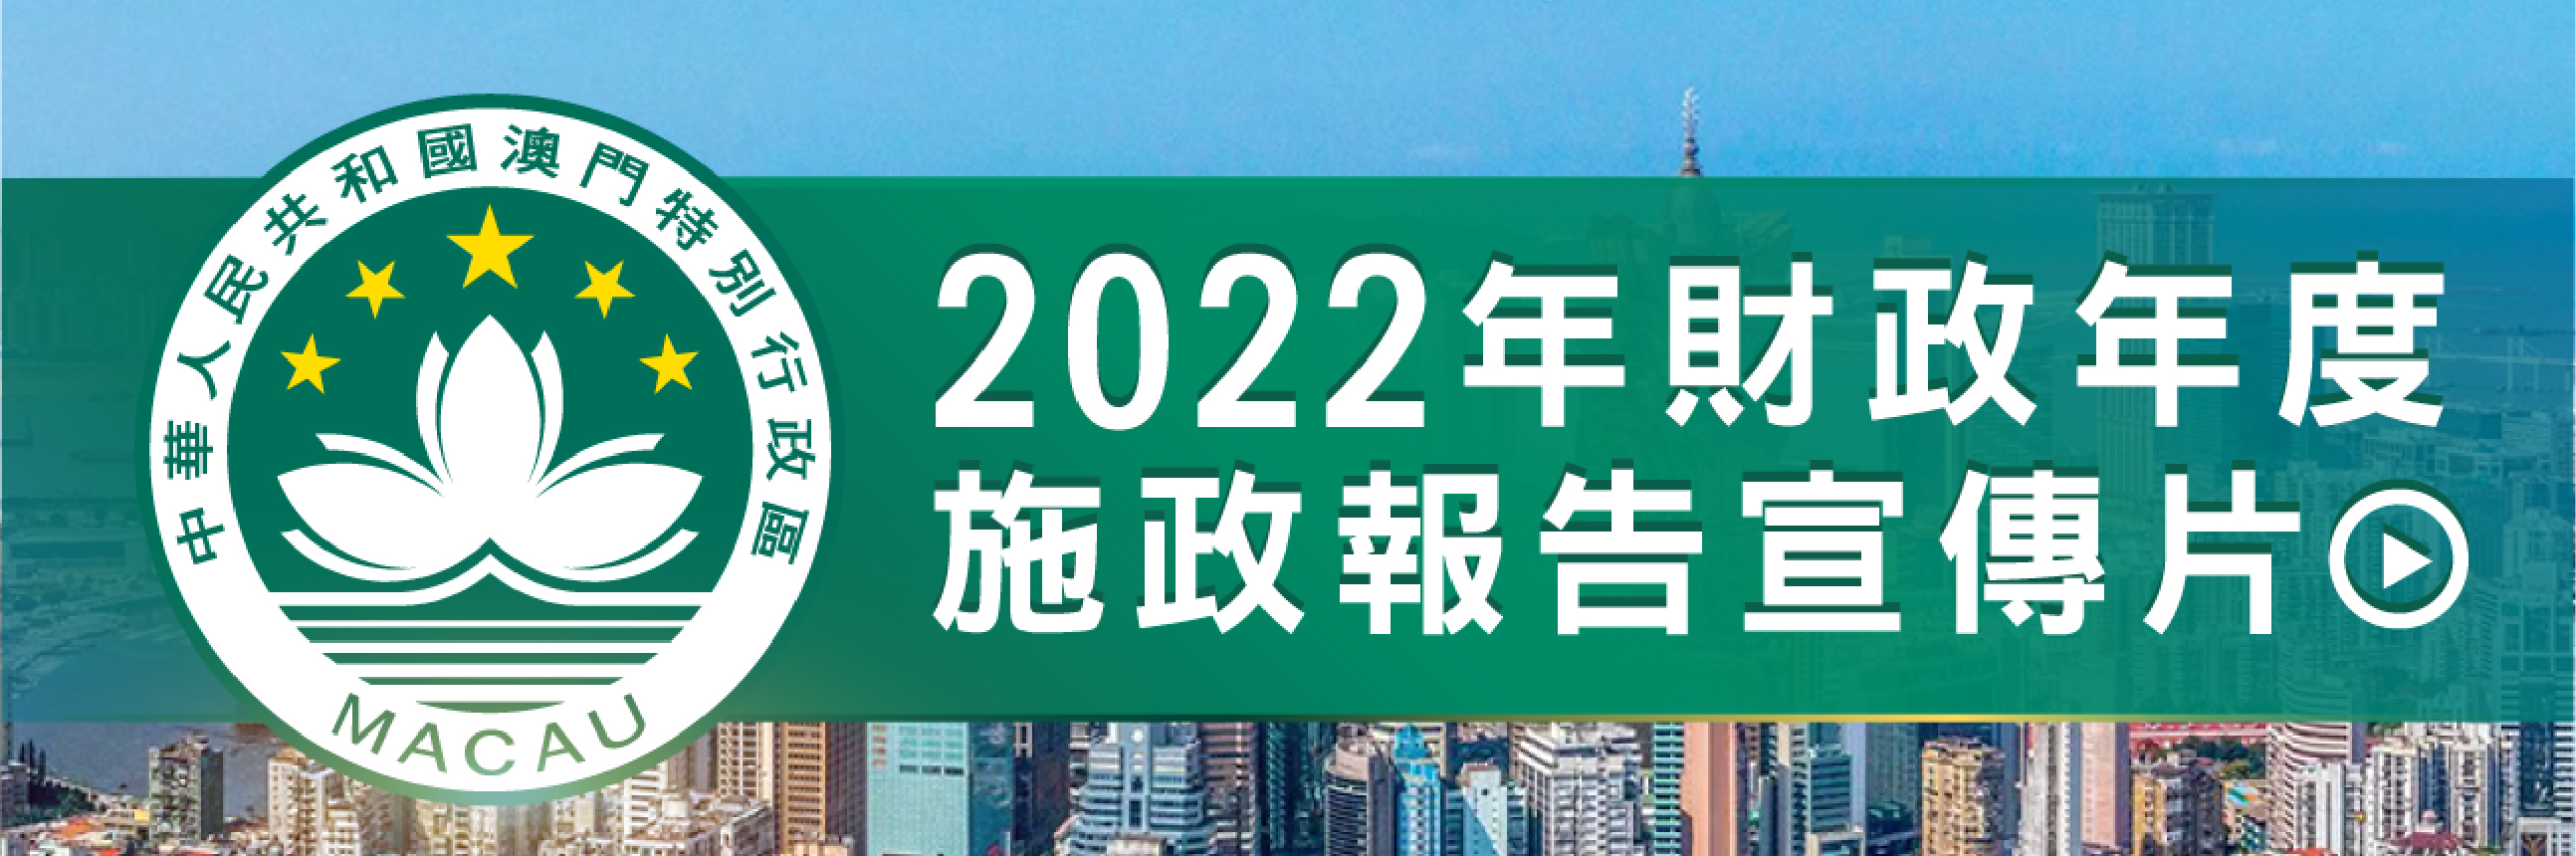 2022年財政年度施政報告宣傳片